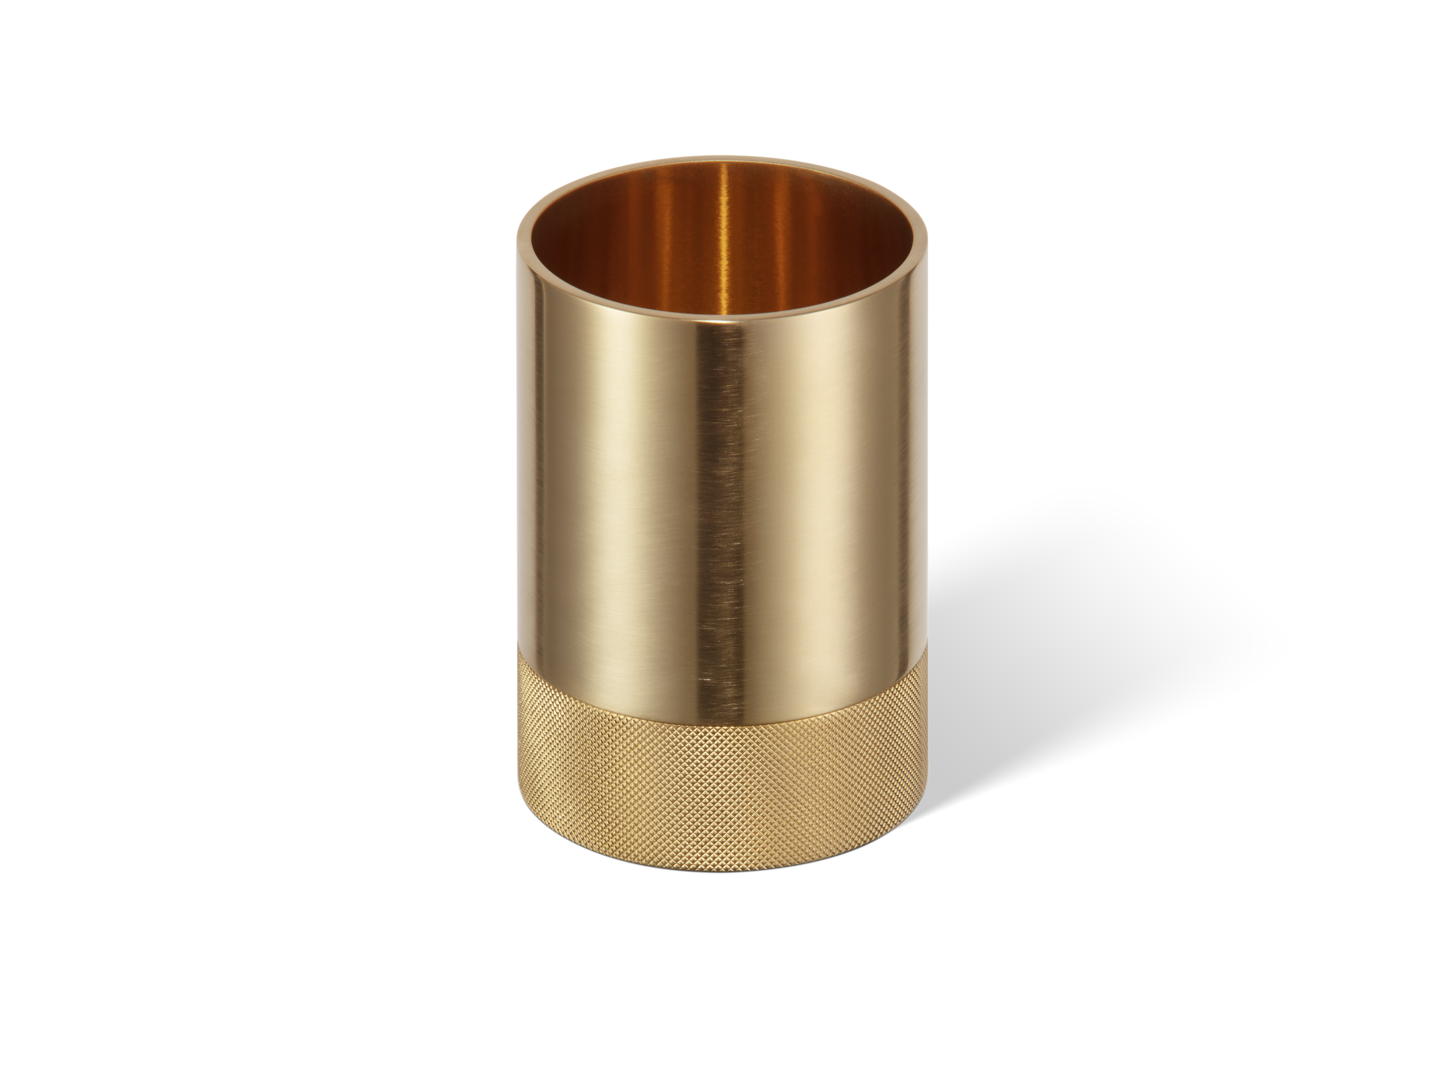 Hochwertiger Gold-matt-24-Karat-Kosmetikorganizer von Decor Walther, ideal für ein luxuriöses Badezimmerdesign